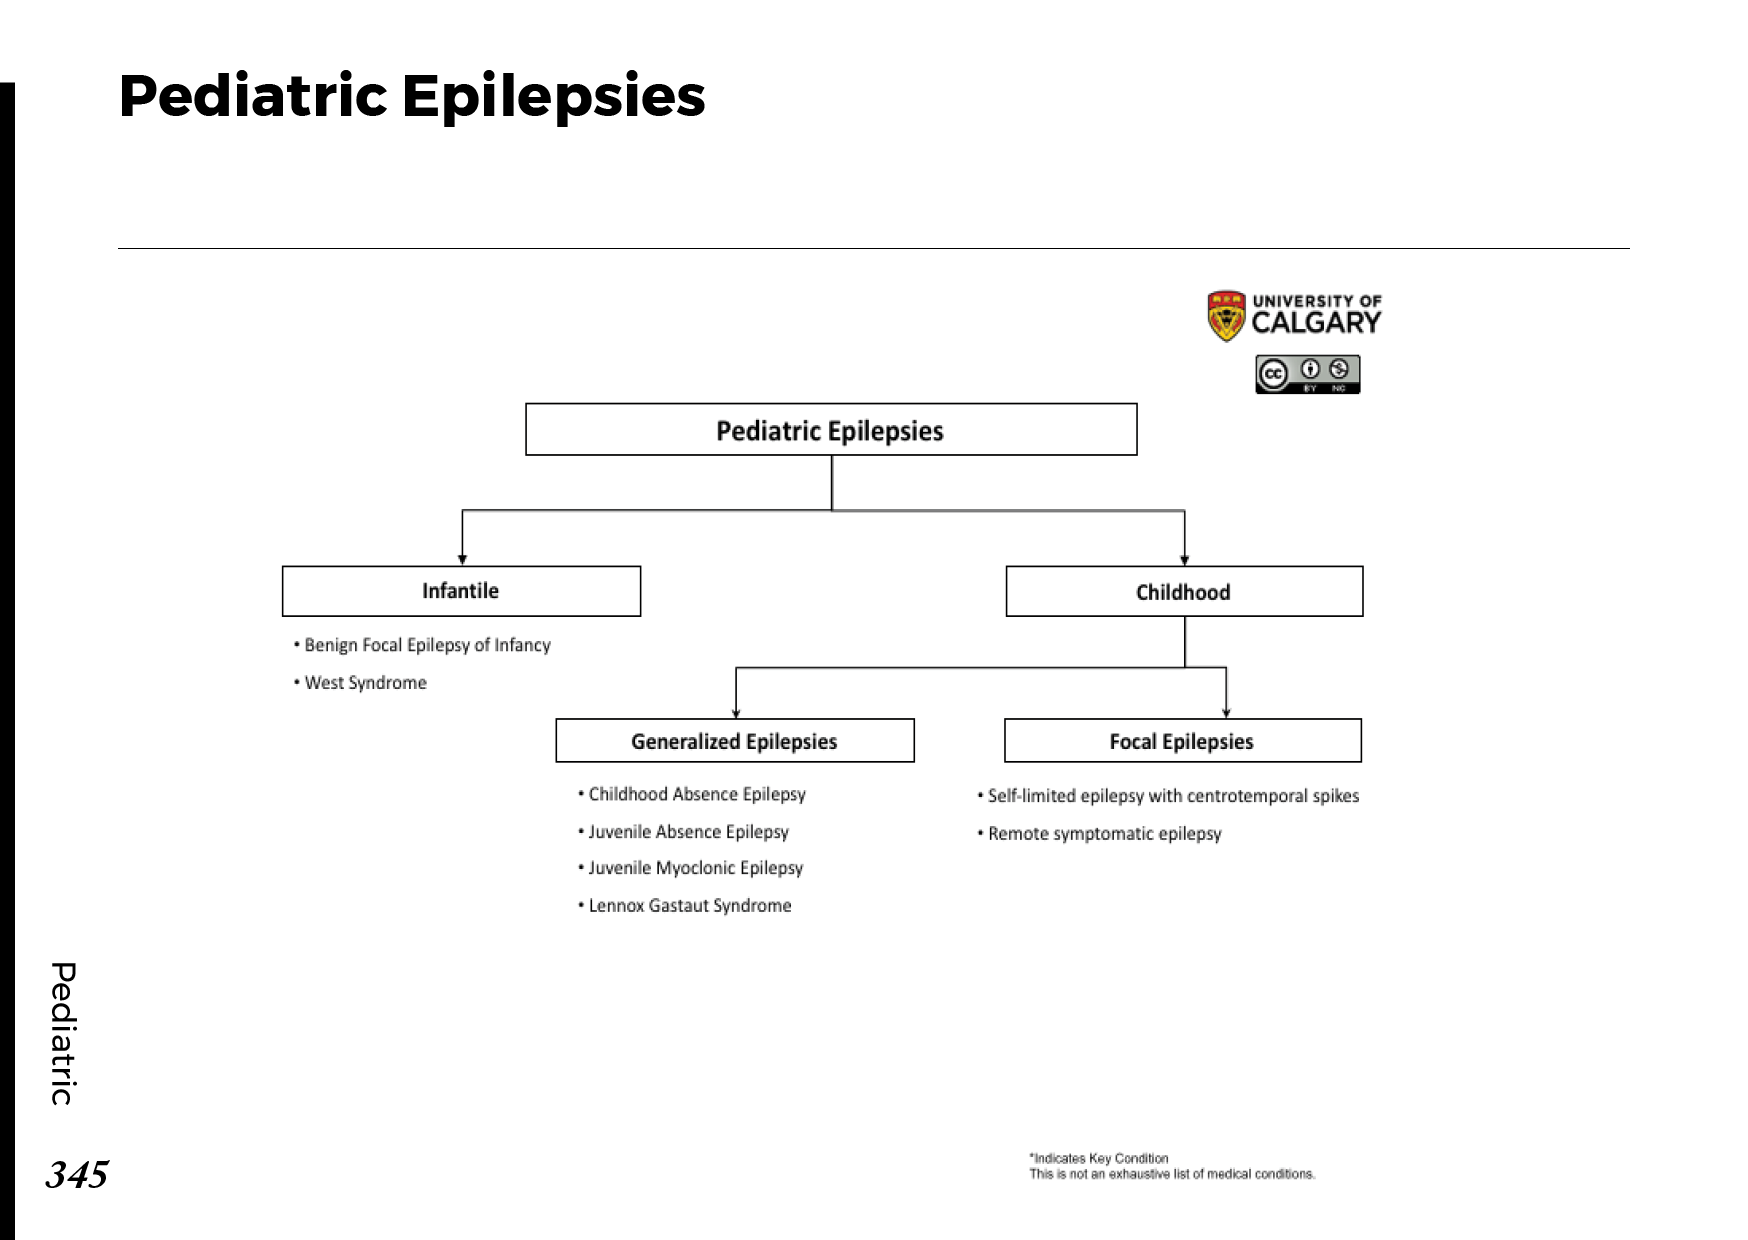 PEDIATRIC EPILEPSIES Scheme